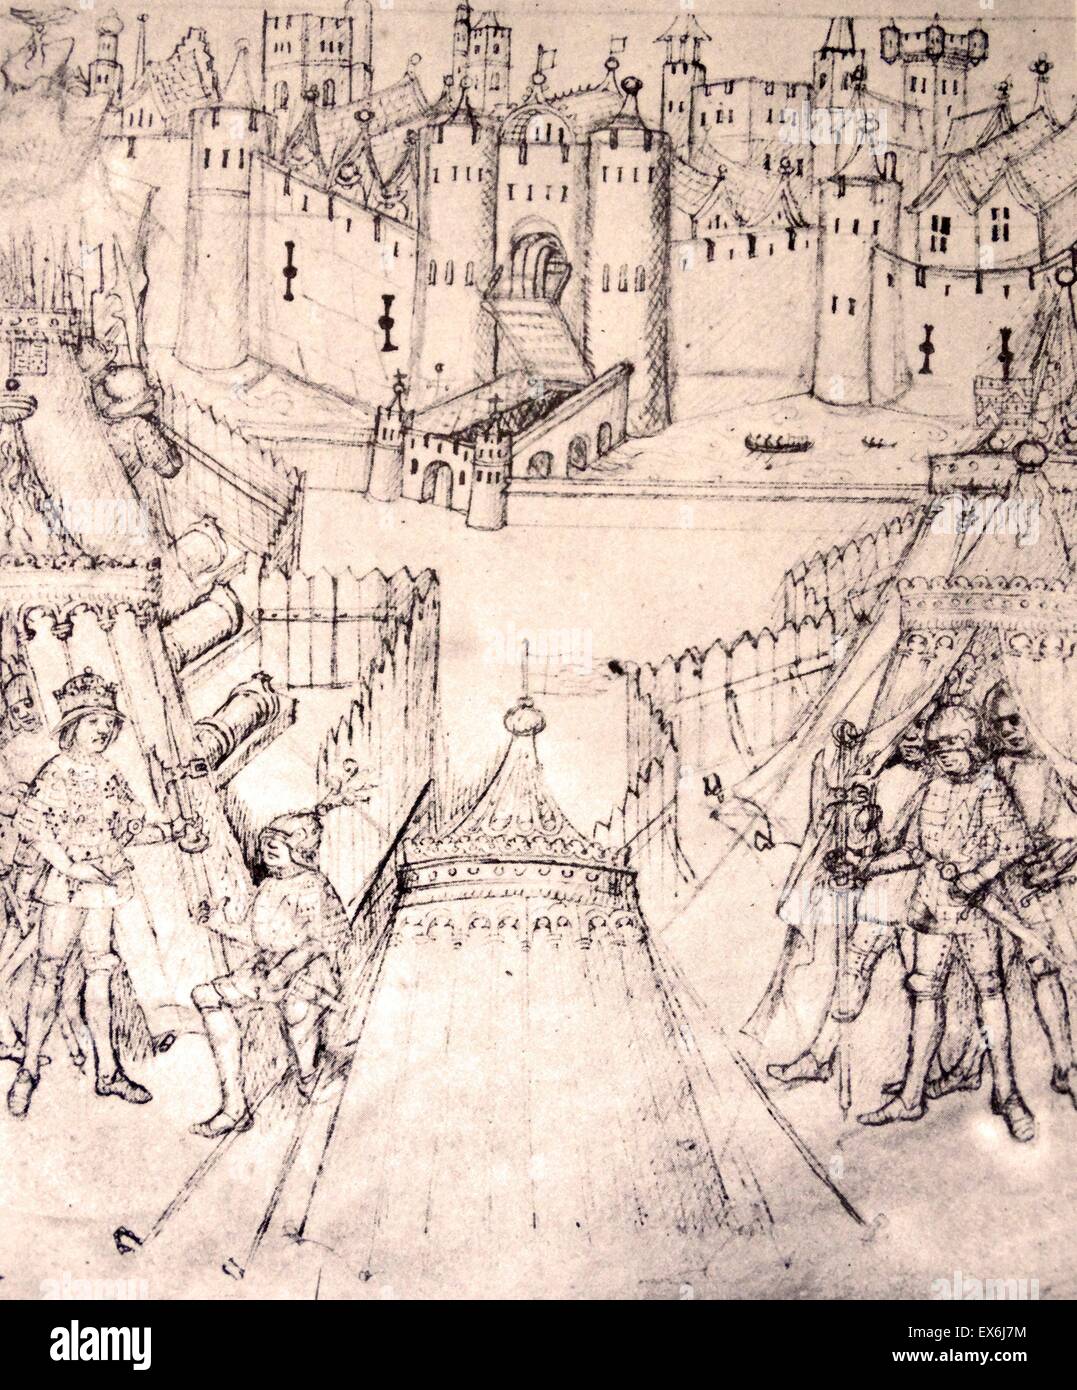 Henry V Belagerung von Rouen, 1418-19, aus dem 15. Jahrhundert das Leben und Taten von Richard Beauchamp, Earl of Warwick. Von The Island Race, ein 20. Jahrhundert-Buch, das die Geschichte der britischen Inseln aus vorrömischer Zeit, der viktorianischen Ära abdeckt. WR Stockfoto